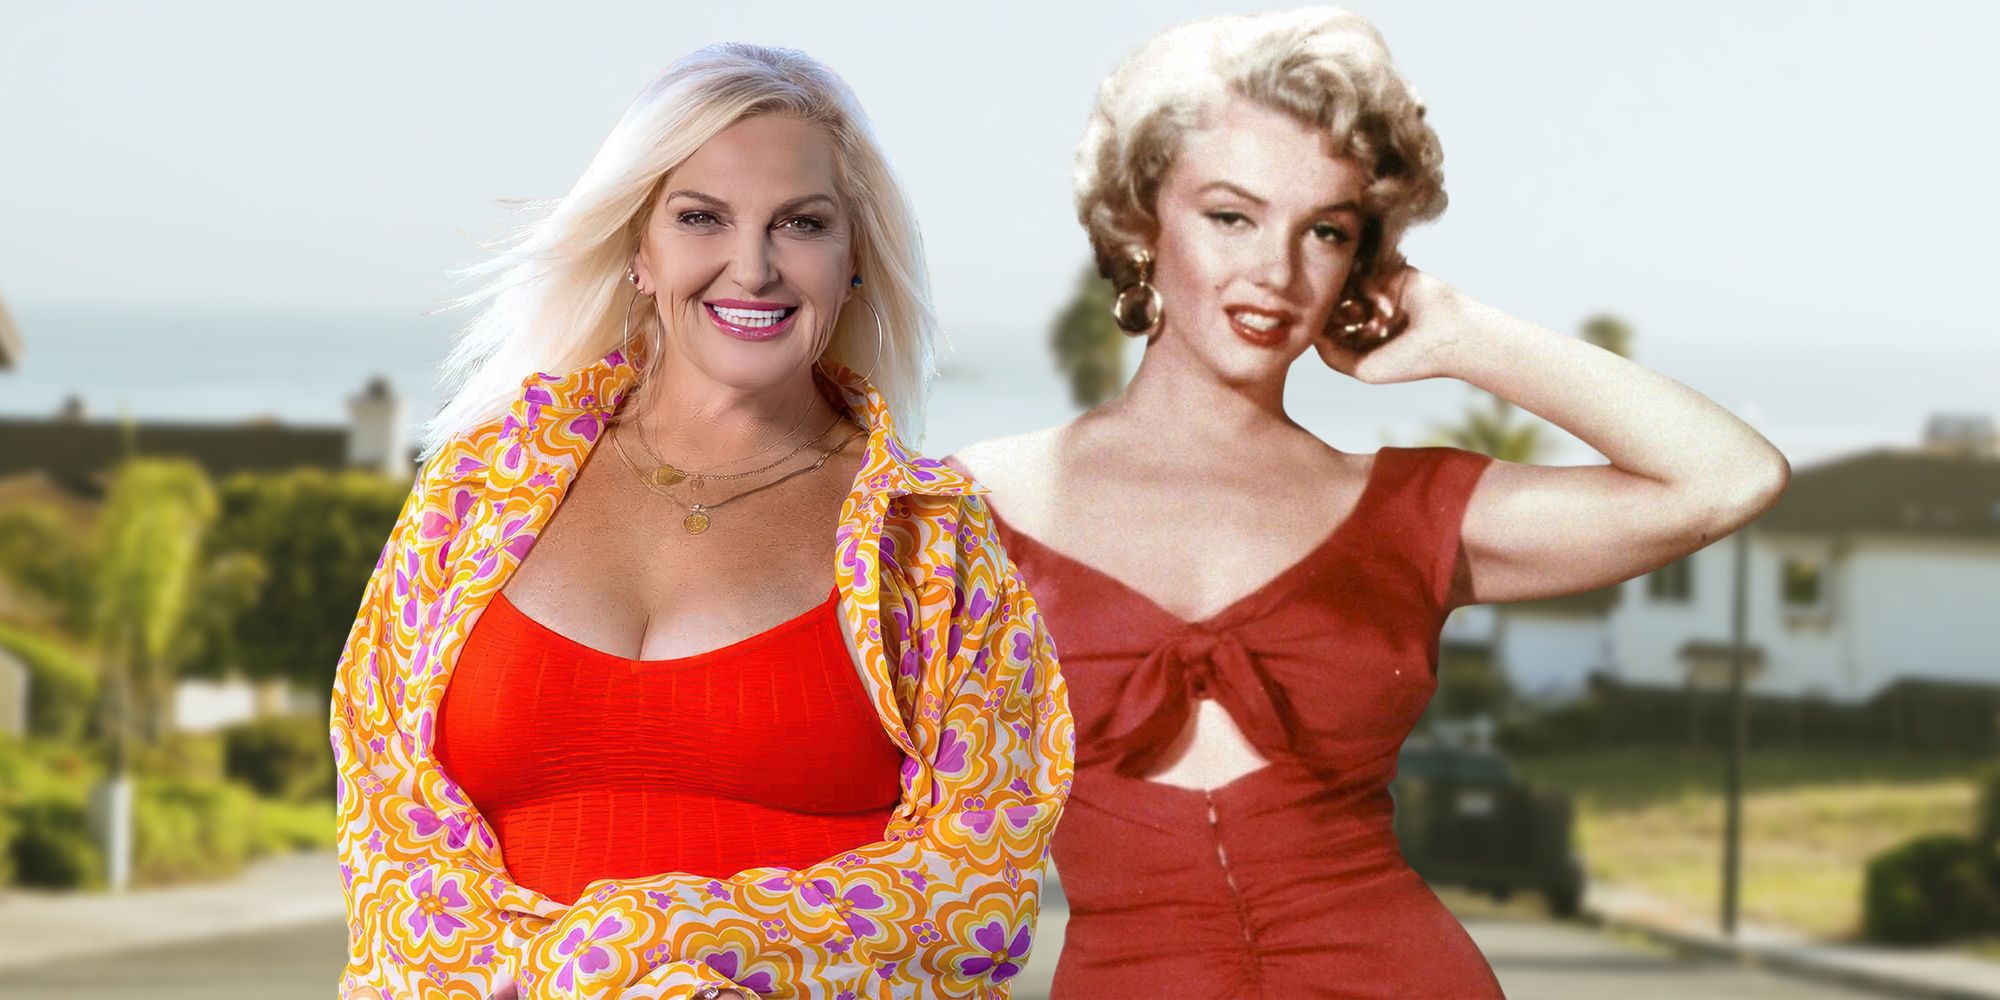 Todo en 90 Días: Los 10 cambios de imagen más impactantes de Angela (incluido su look de “Marilyn Monroe”)